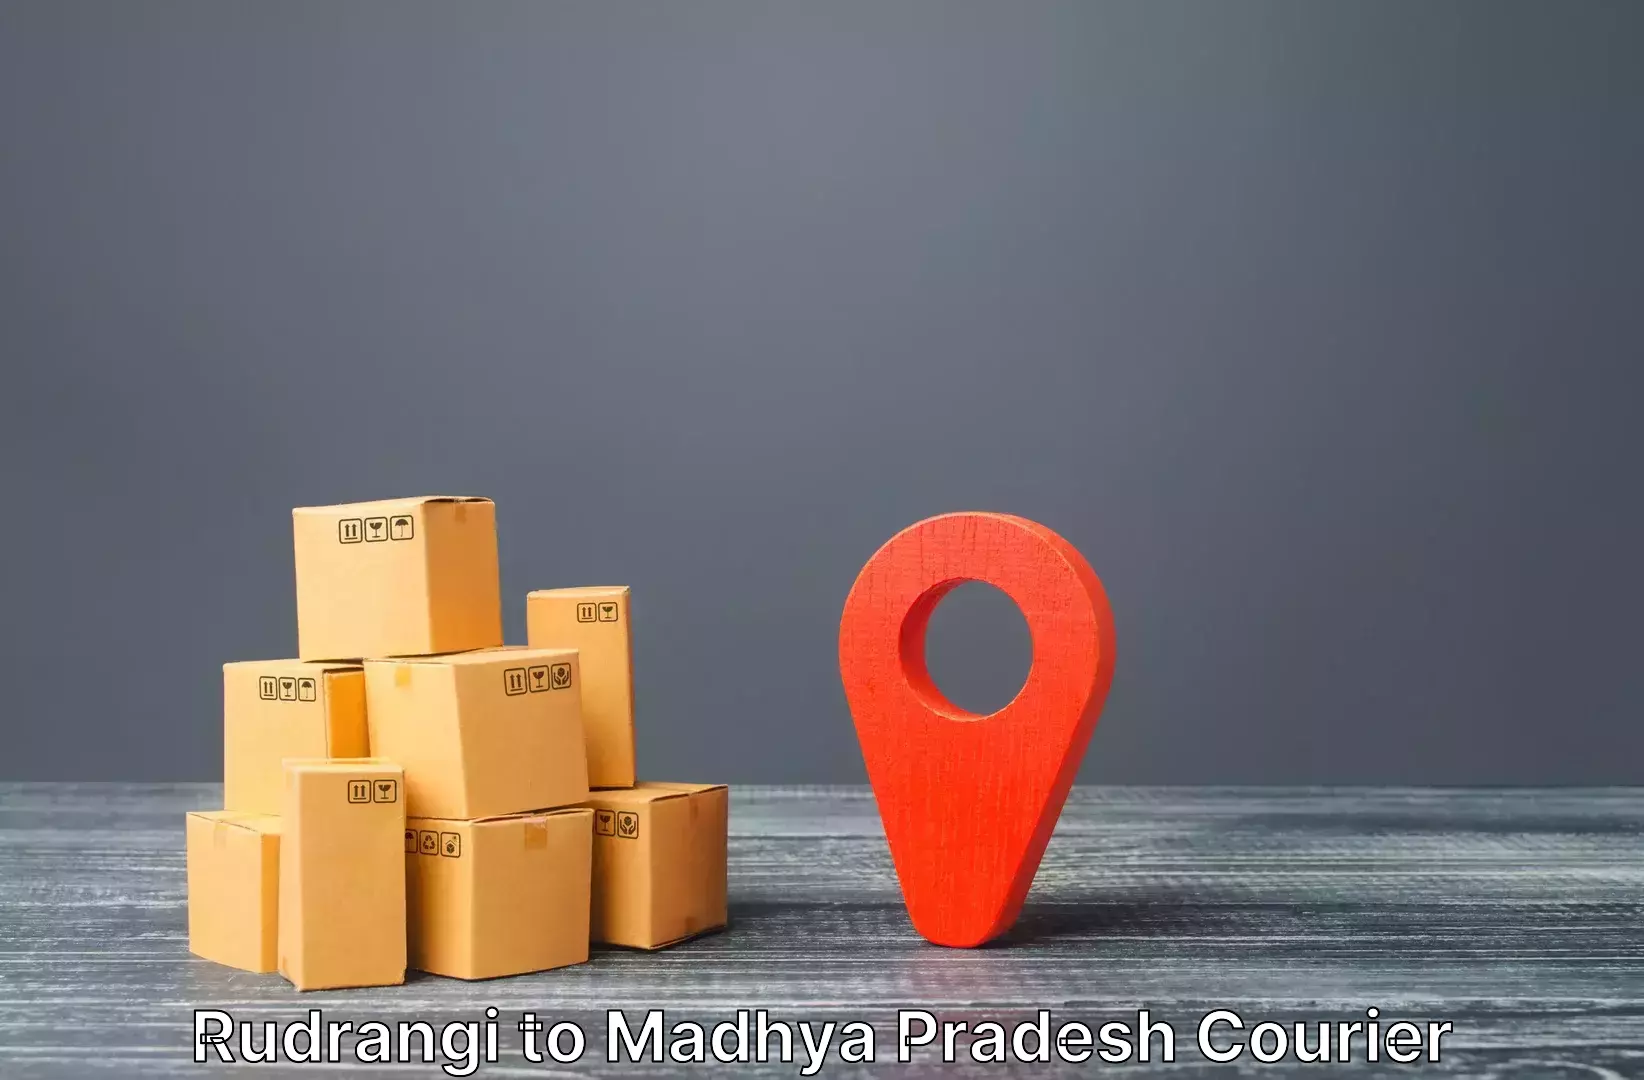 Multi-destination luggage transport in Rudrangi to BHEL Bhopal